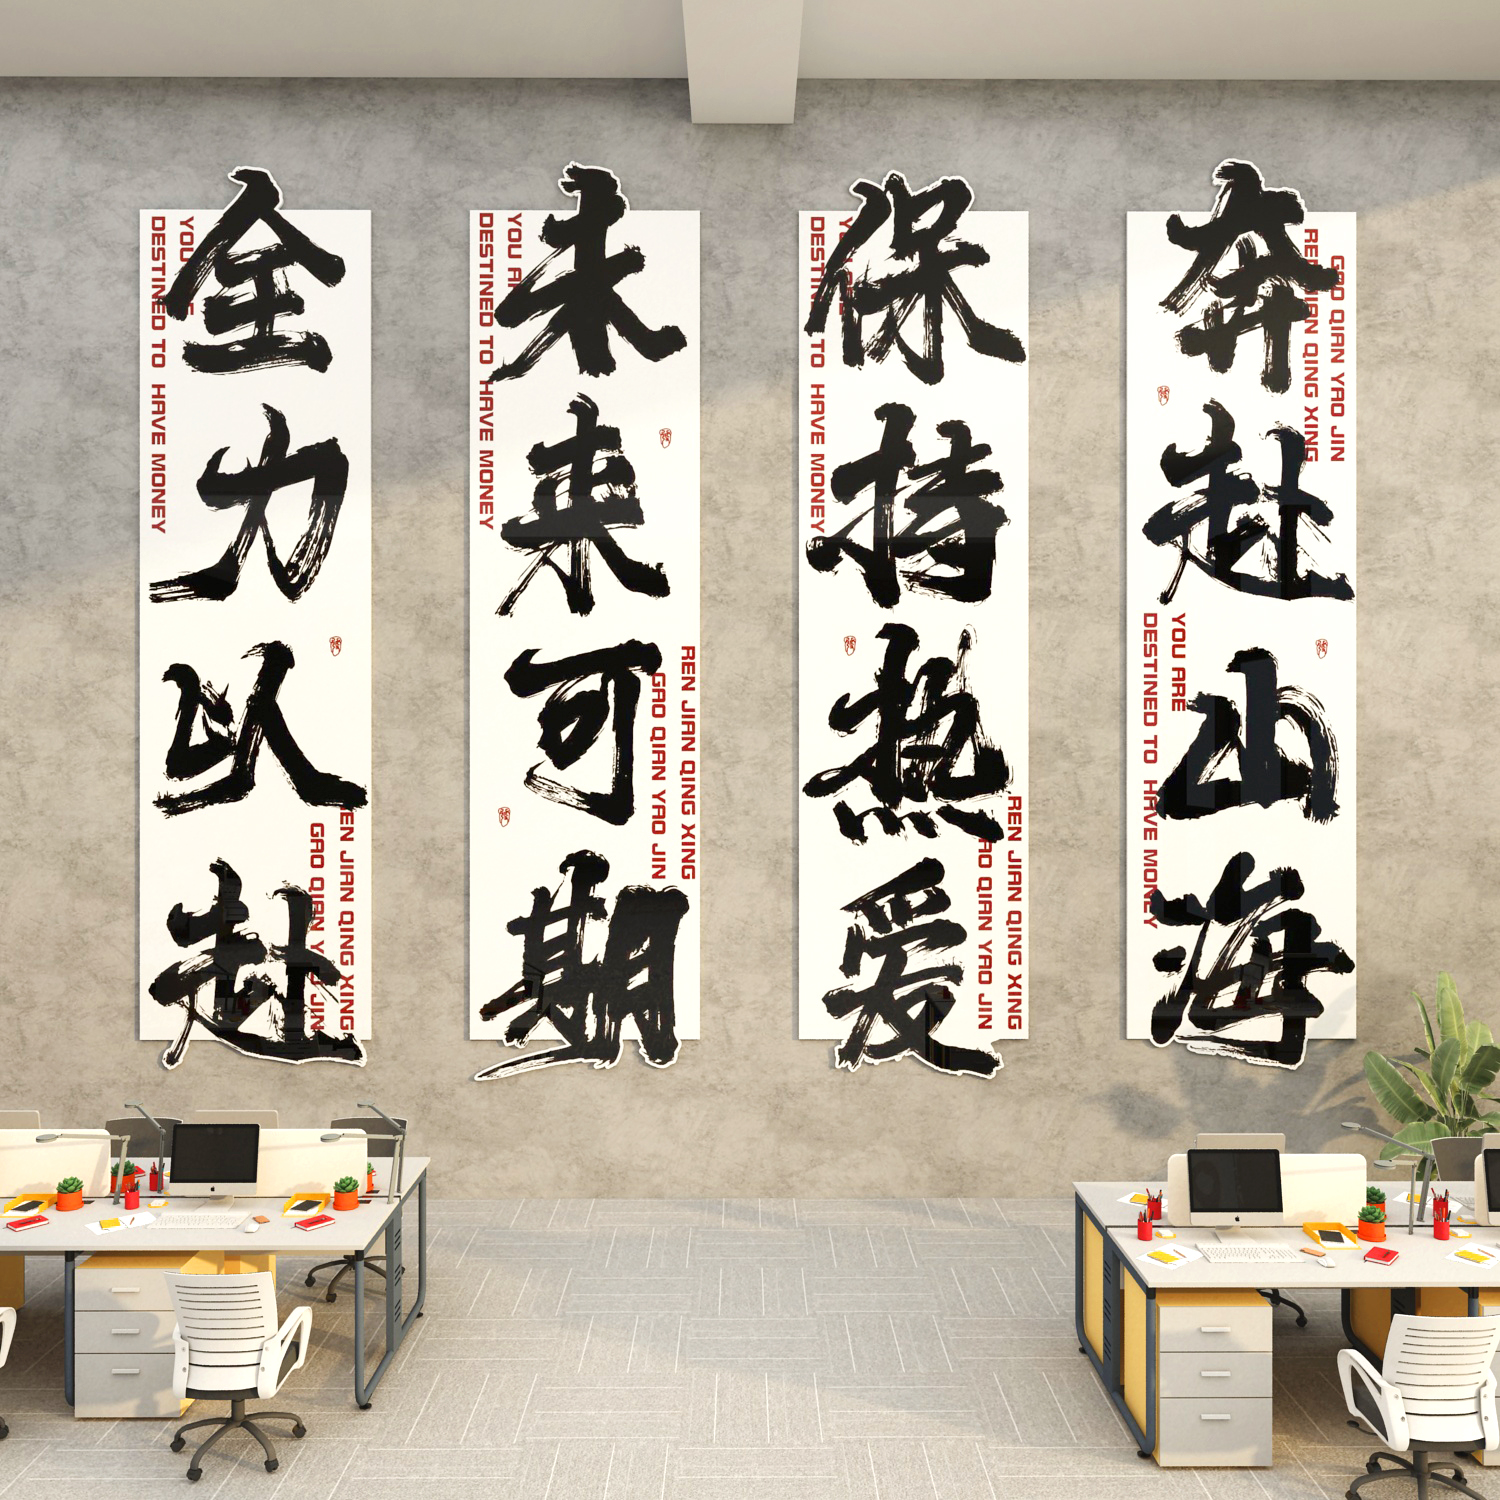 办公室墙面装饰氛围布置画高级感背景企业公司文化墙励志墙贴标语